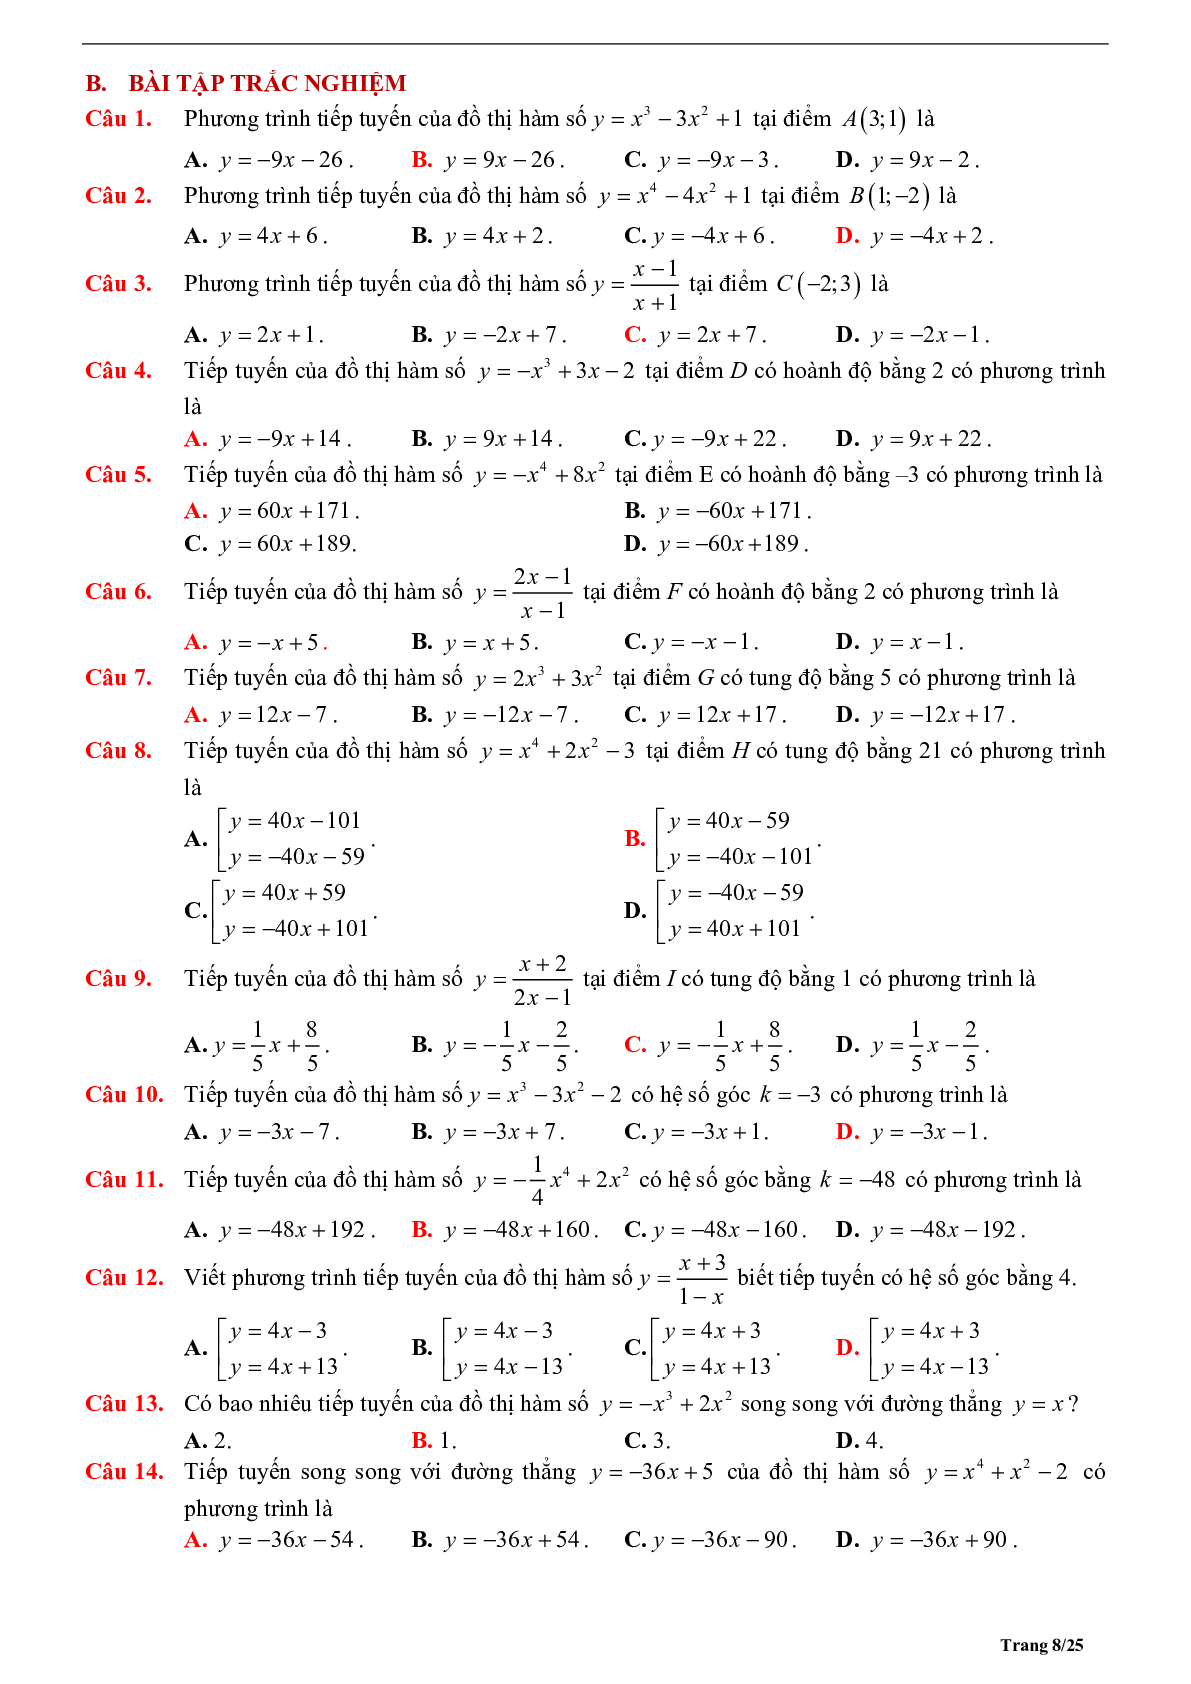 Tóm tắt lý thuyết và bài tập trắc nghiệm về tiếp tuyến của đồ thị hàm số (trang 8)